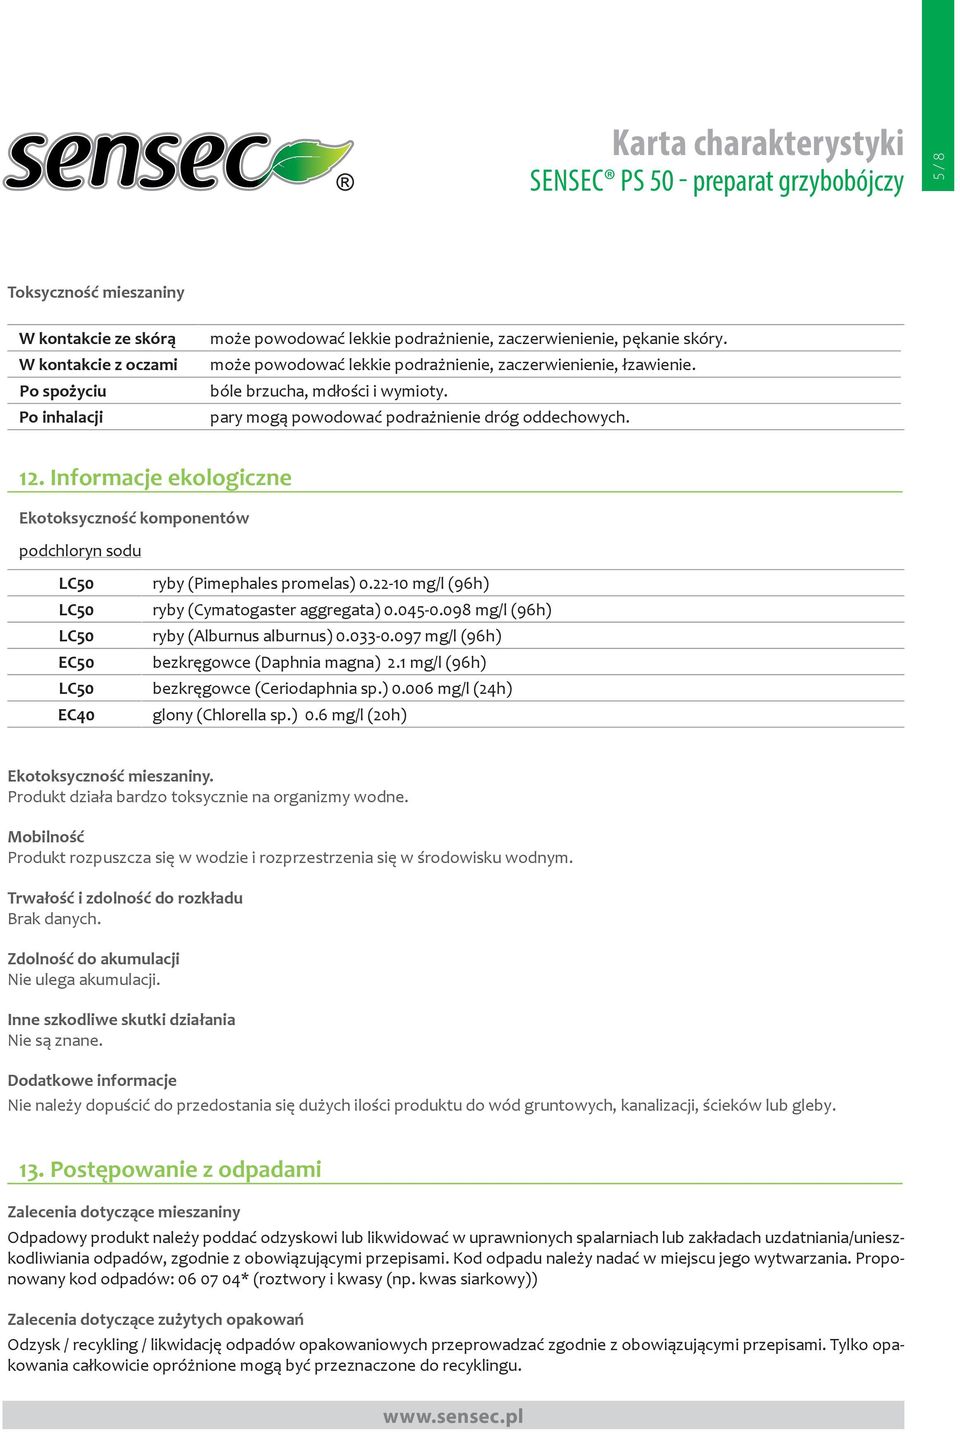 Informacje ekologiczne Ekotoksyczność komponentów podchloryn sodu LC50 LC50 LC50 EC50 LC50 EC40 ryby (Pimephales promelas) 0.22-10 mg/l (96h) ryby (Cymatogaster aggregata) 0.045-0.